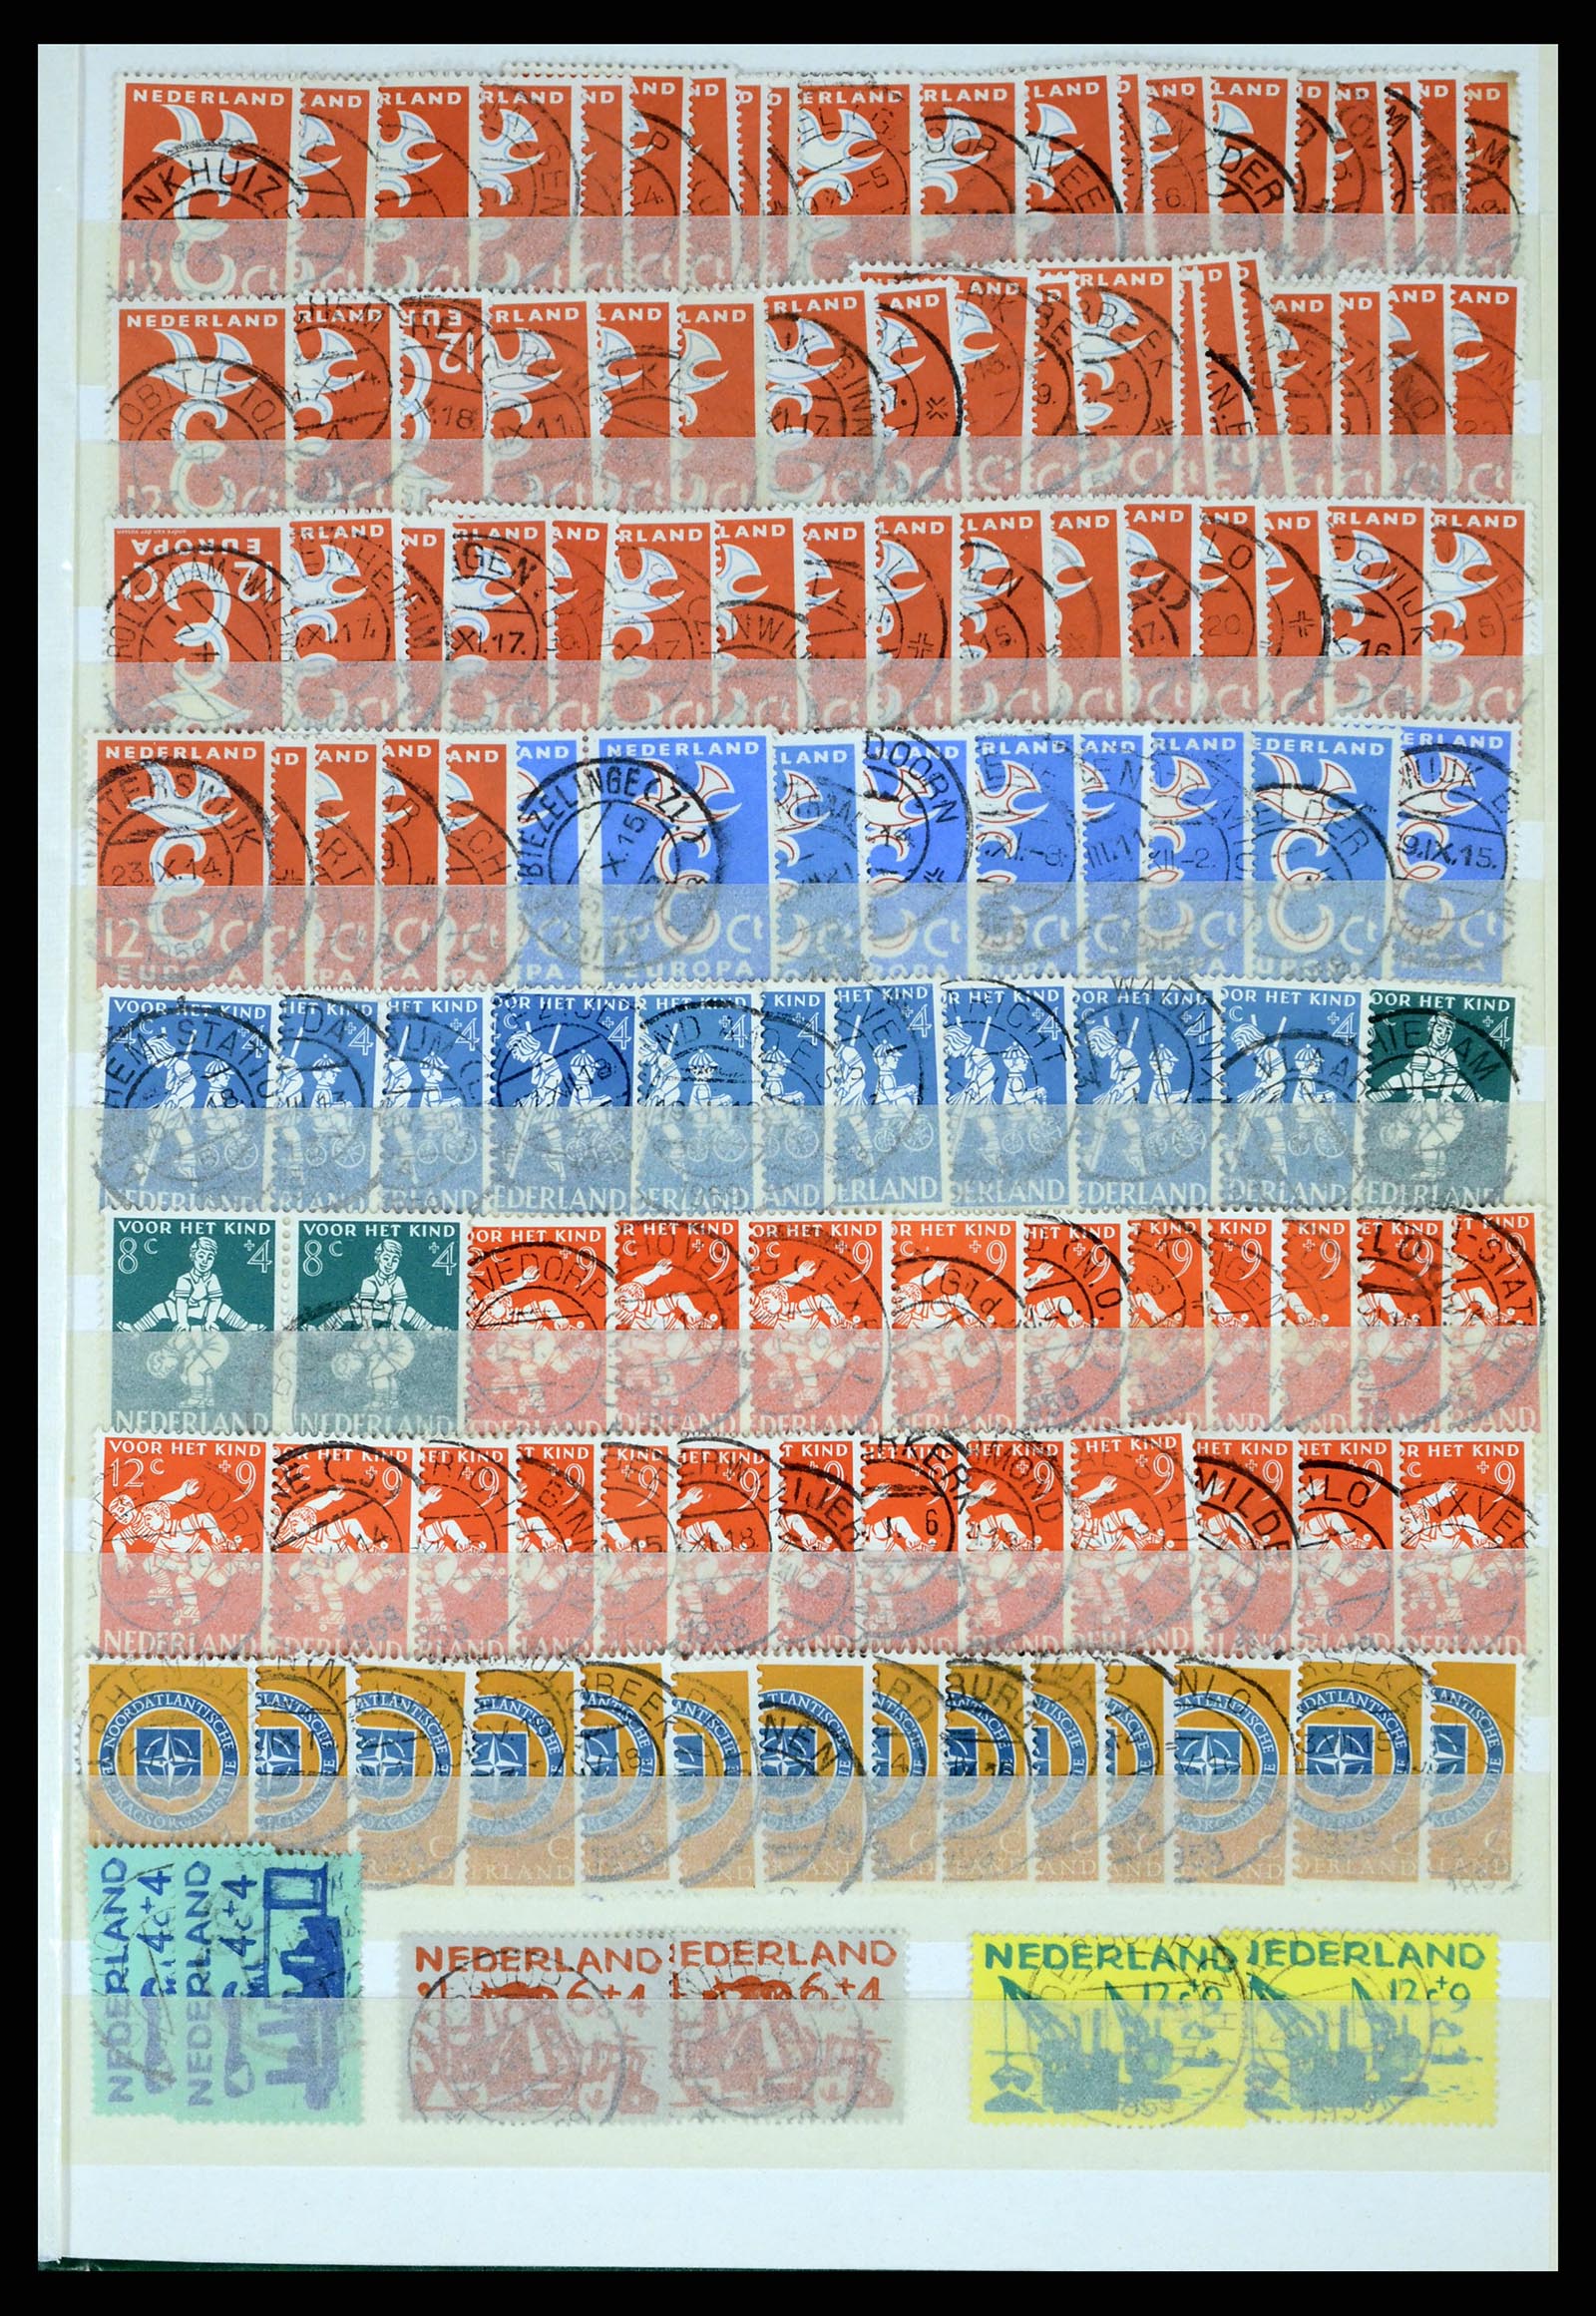 37424 053 - Postzegelverzameling 37424 Nederland kortebalk stempels.